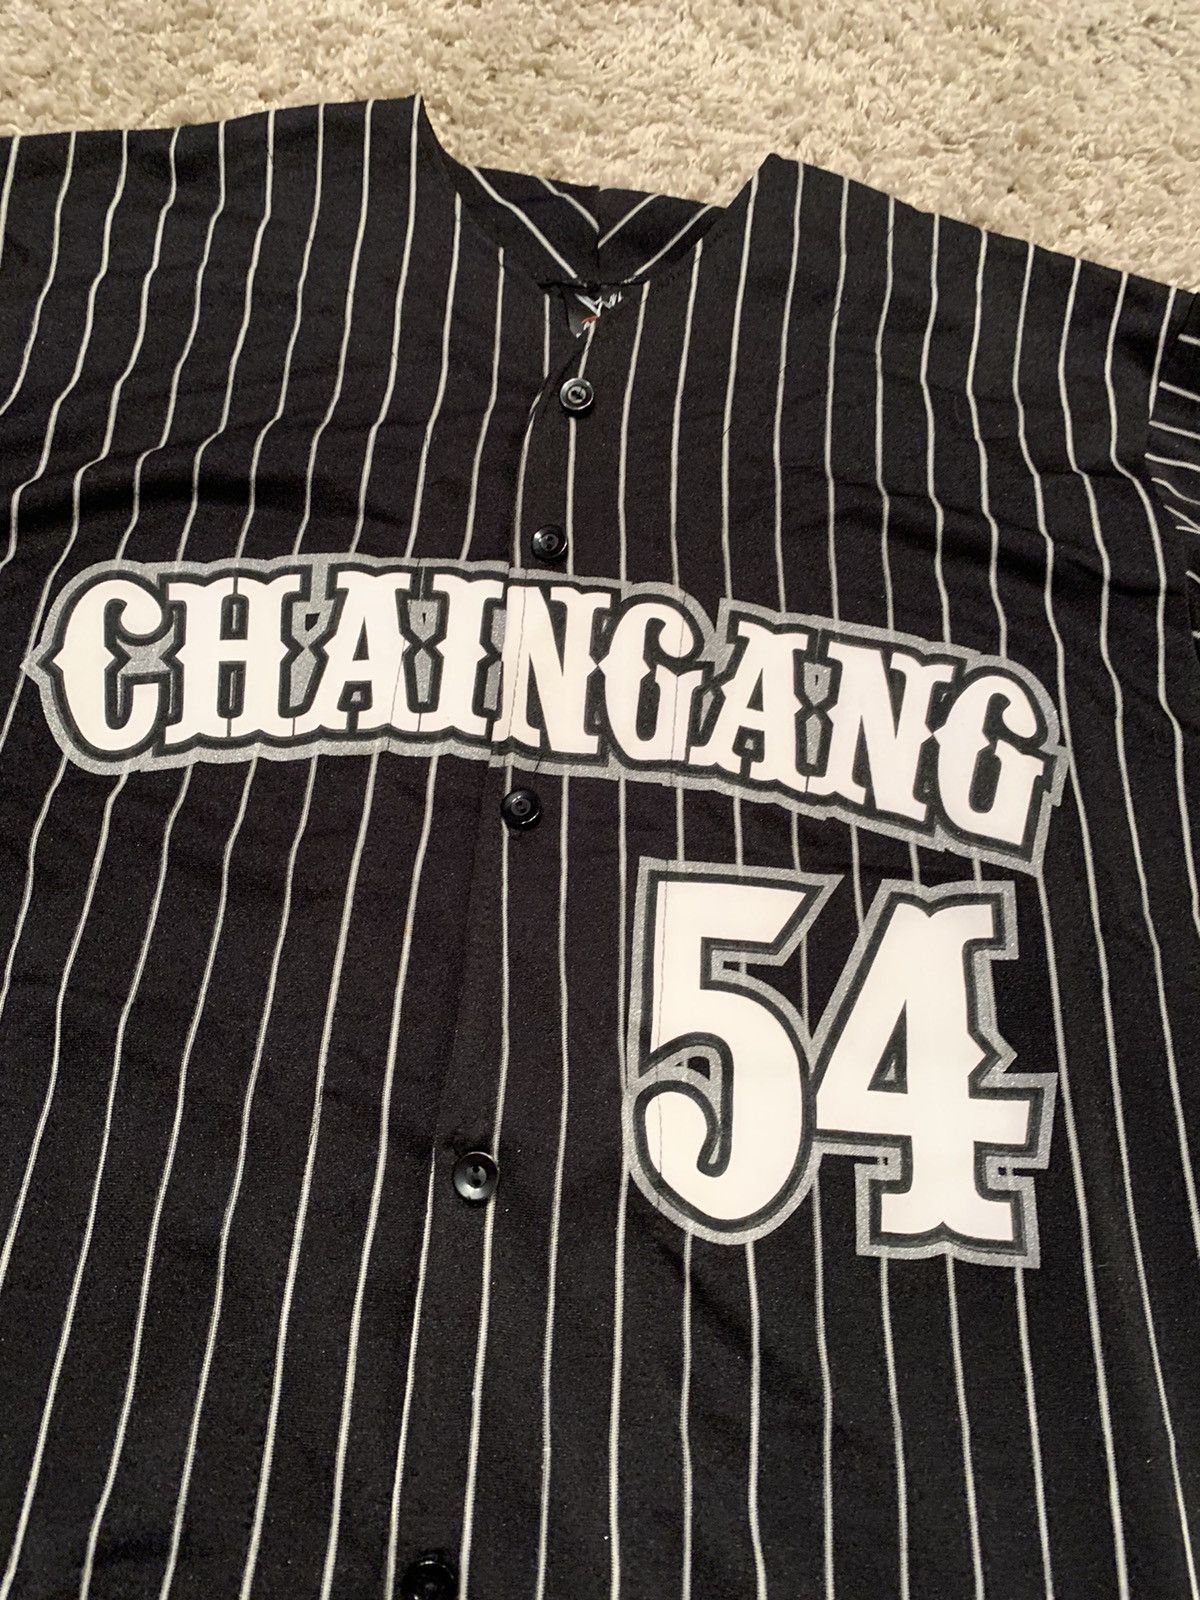 Vintage 2004 John cena chain gang jersey pin stripe wwe smackdown Size US L / EU 52-54 / 3 - 4 Thumbnail